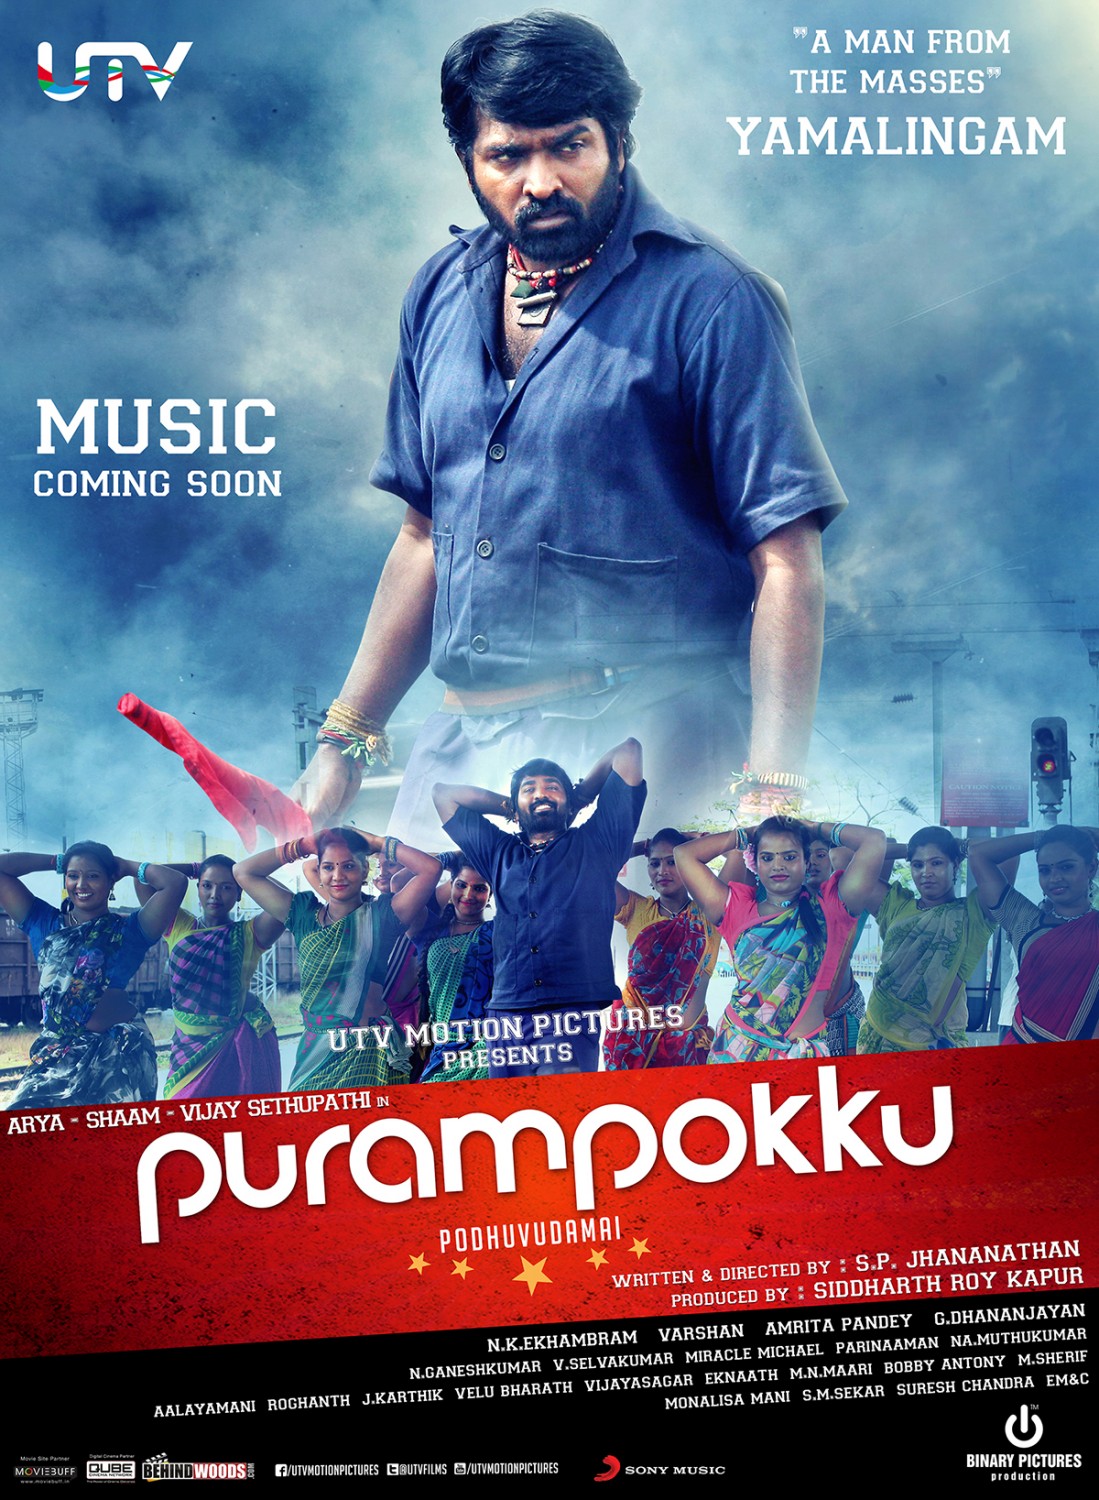 Extra Large Movie Poster Image for Purampokku Poduvudamai (#4 of 5)